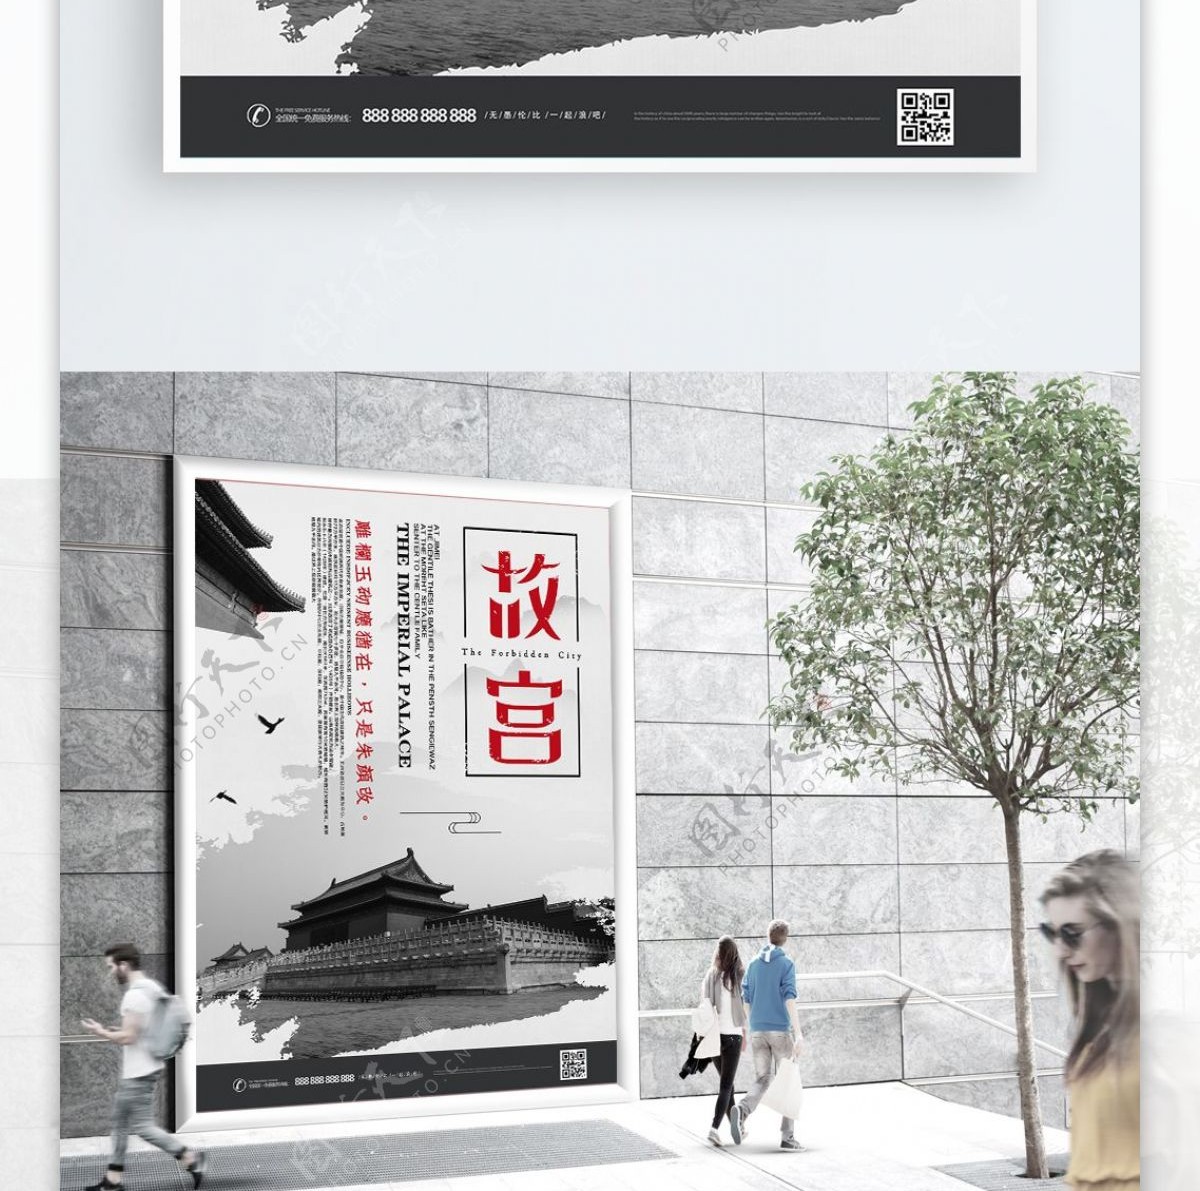 原创创意字体故宫文艺典雅旅游宣传海报